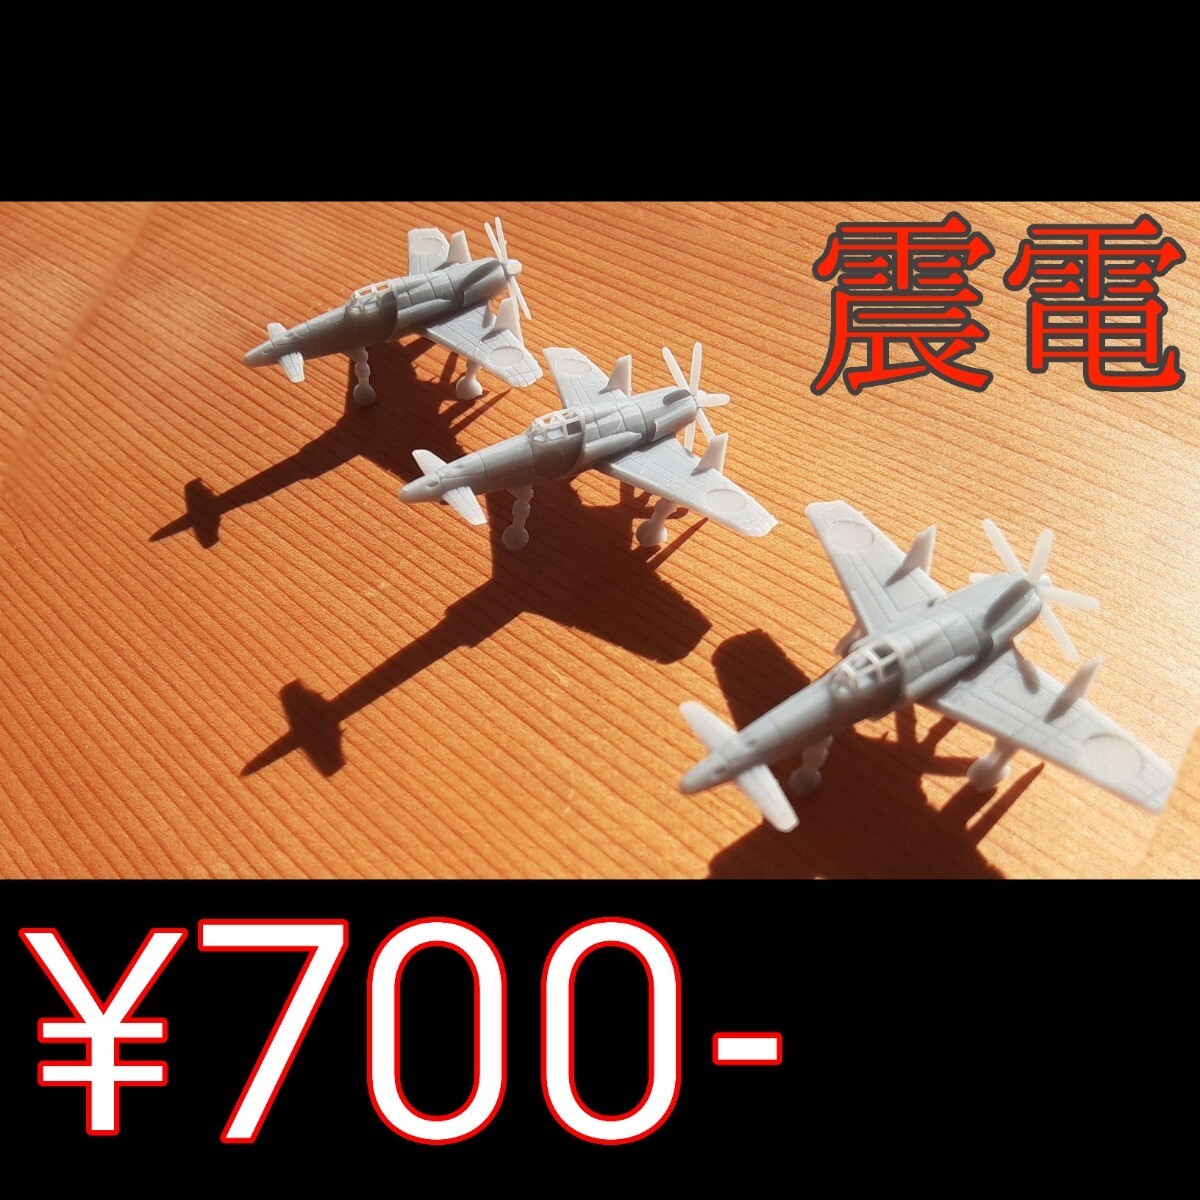 幻の局地戦闘機「震電」 模型 3機入り 値段交渉可能の画像1